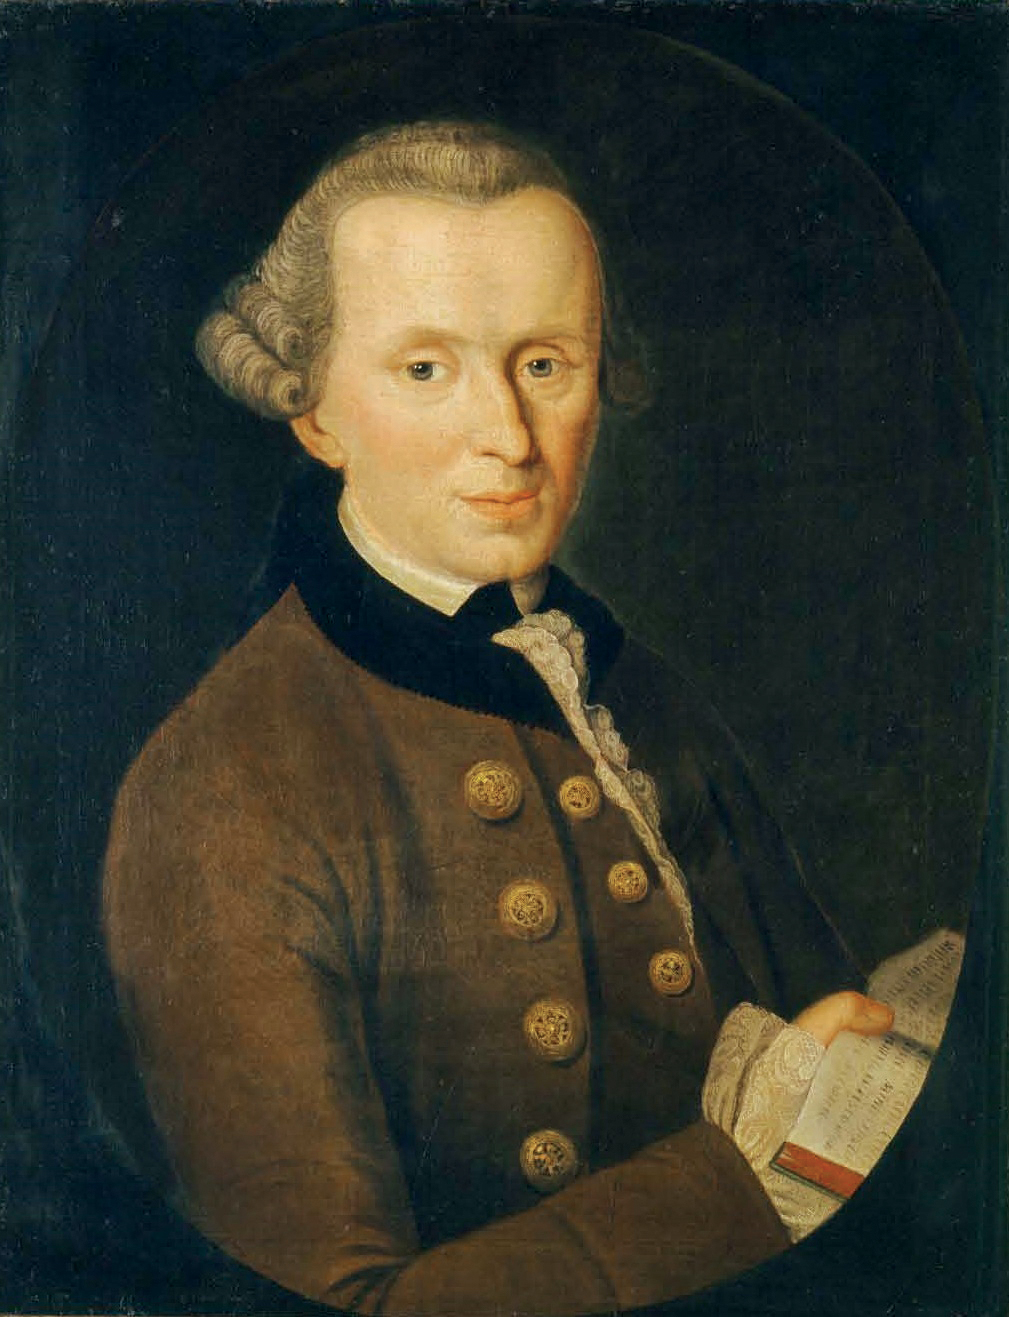 Les 300 ans de la naissance de Kant et l’influence néfaste du kantisme